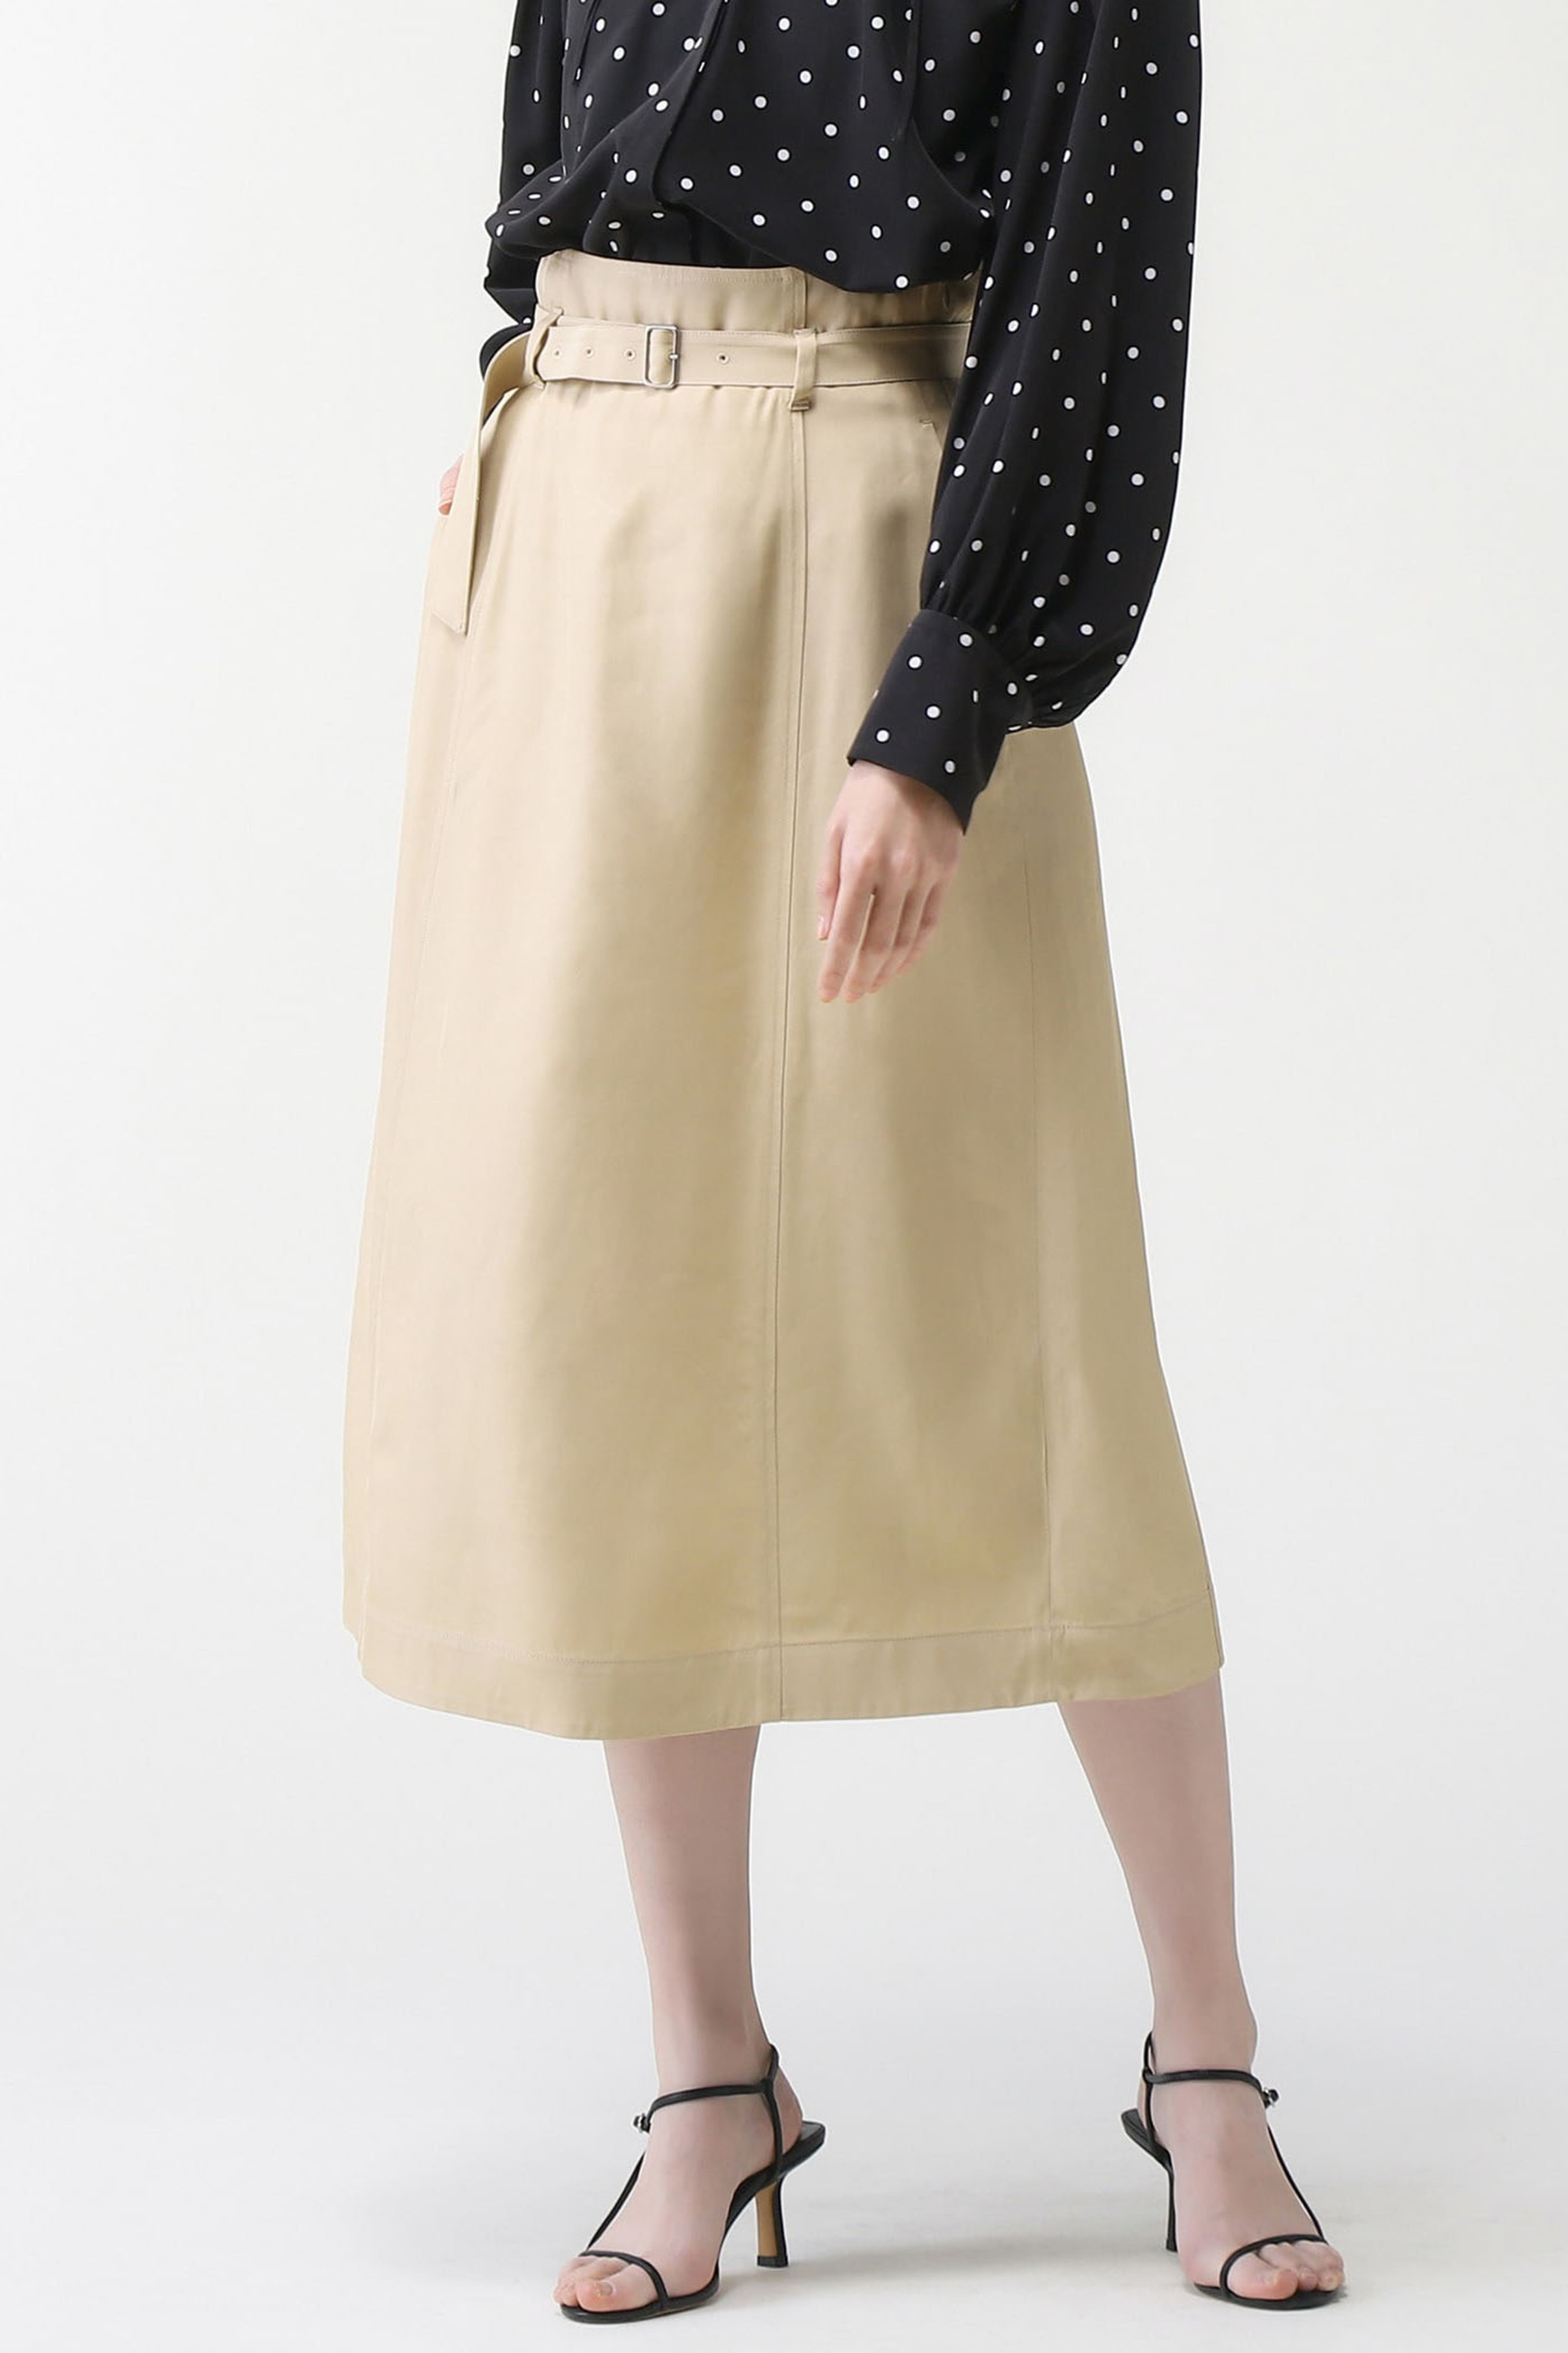 Merlette（マーレット）ARC スカート 　カラー：ベージュ　サイズ：XS海外の直営店で購入